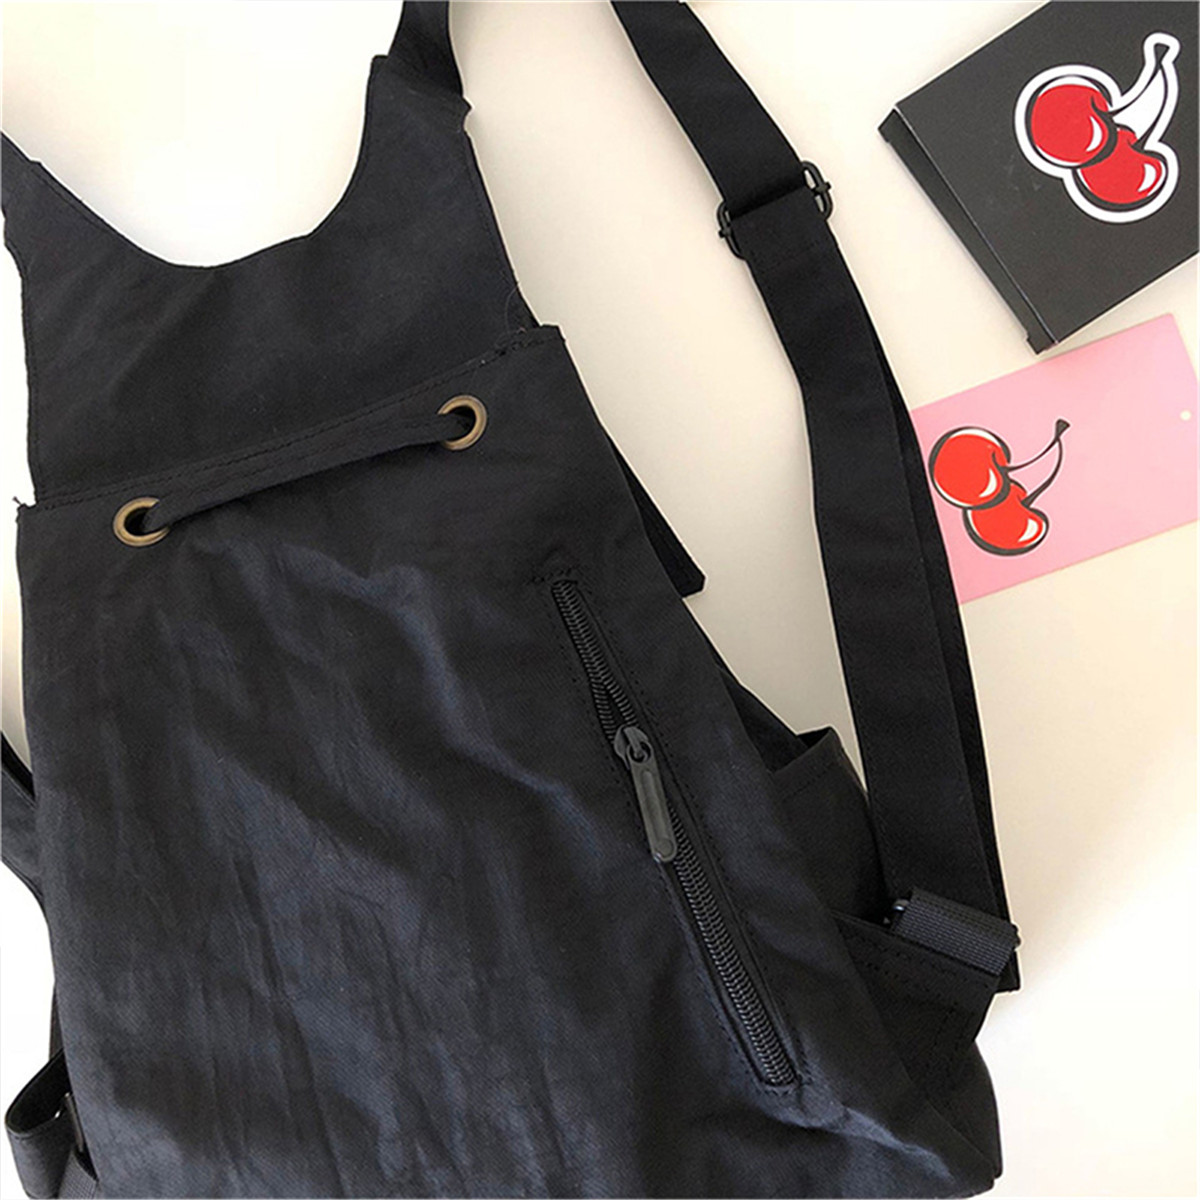 Outdoor-Nylon-School-Bag-Portable-Girl-Backpack-Travel-Shoulder-Bag-1627690-3